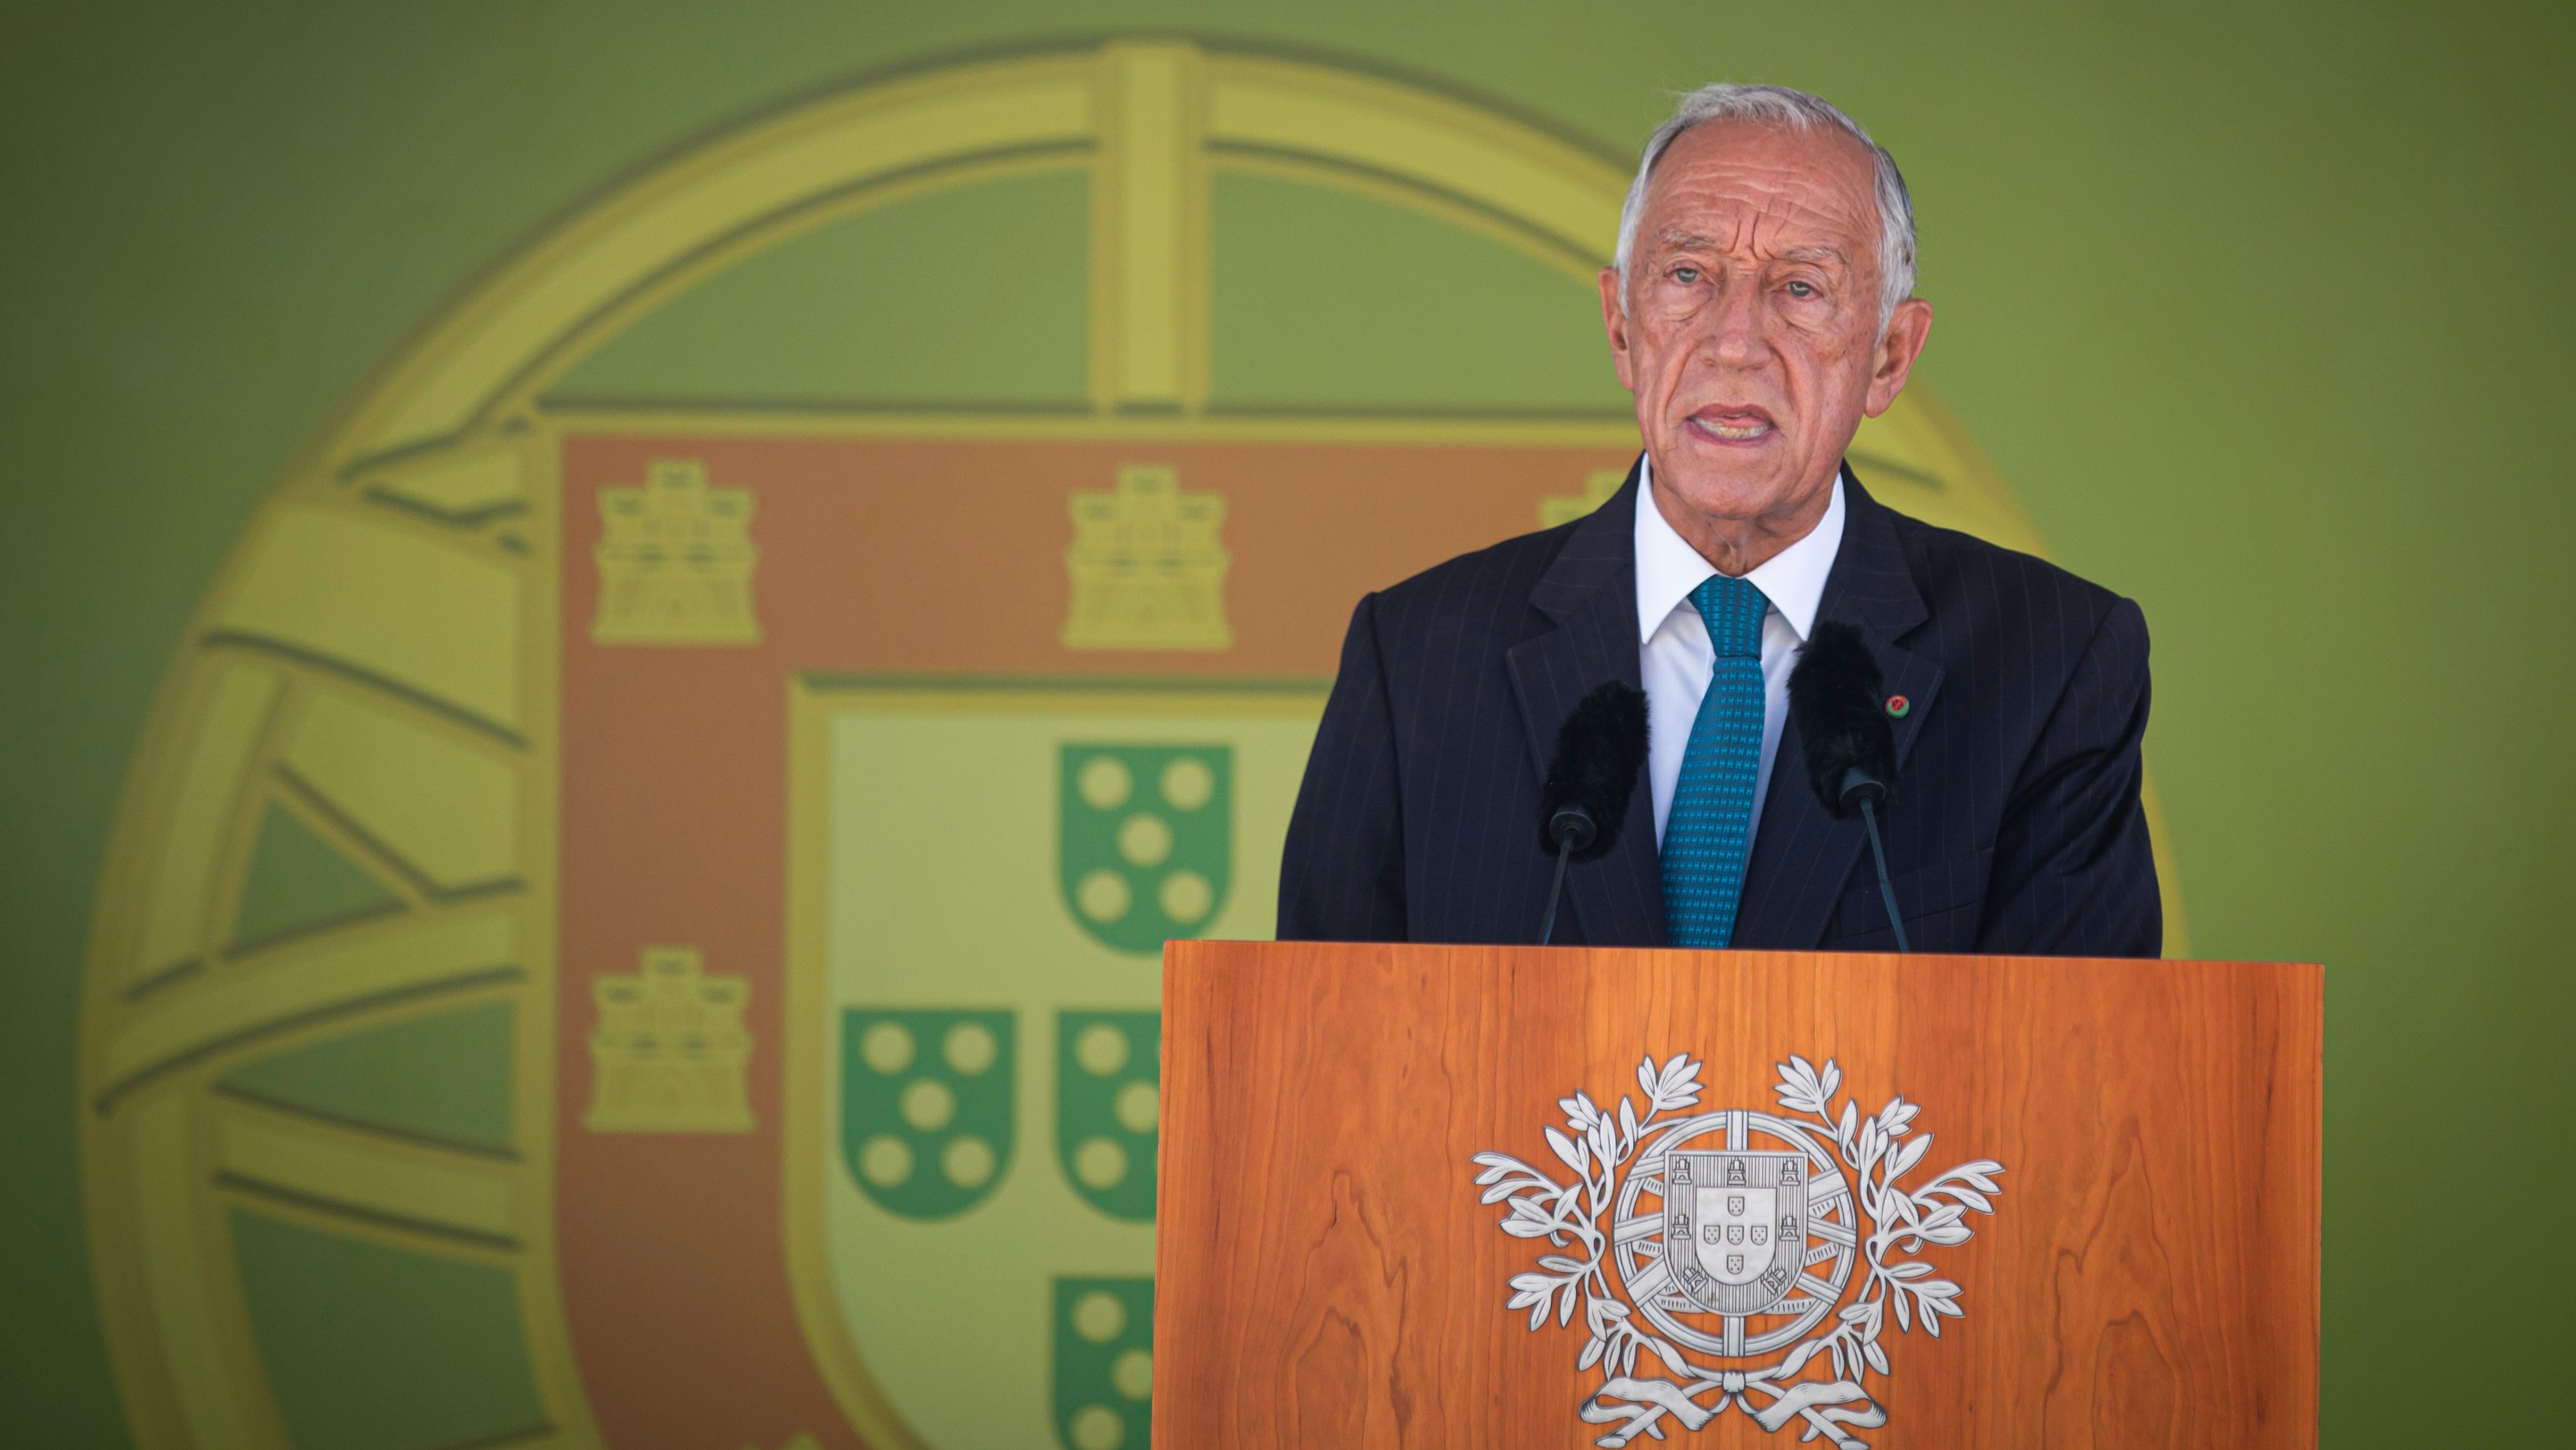 Desde que assumiu a chefia do Estado, em março de 2016, Marcelo Rebelo de Sousa inovou ao convidar personalidades estrangeiras e portuguesas para as reuniões do Conselho de Estado